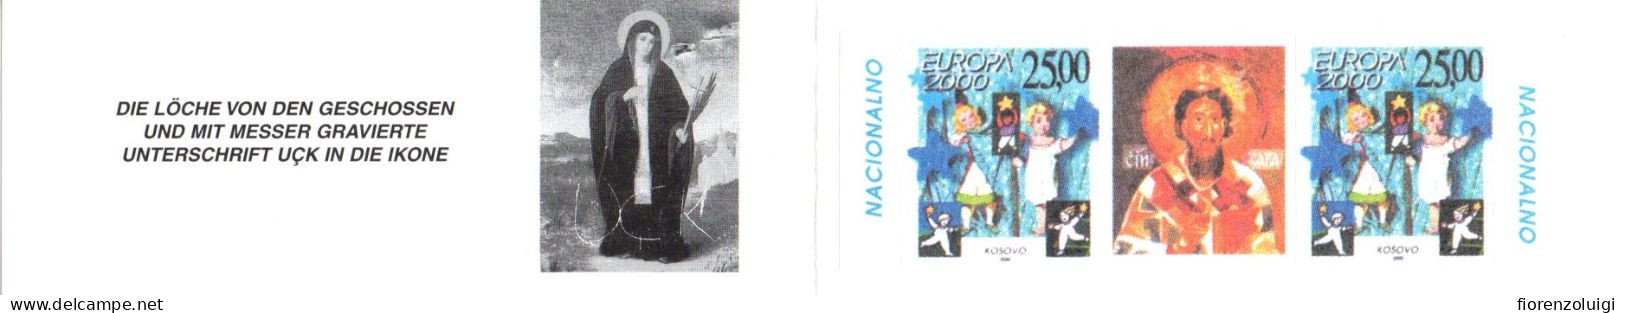 EUROPA CEPT 2000 GIRO COMPLETO LIBRETTI / BOOKLETS MNH**